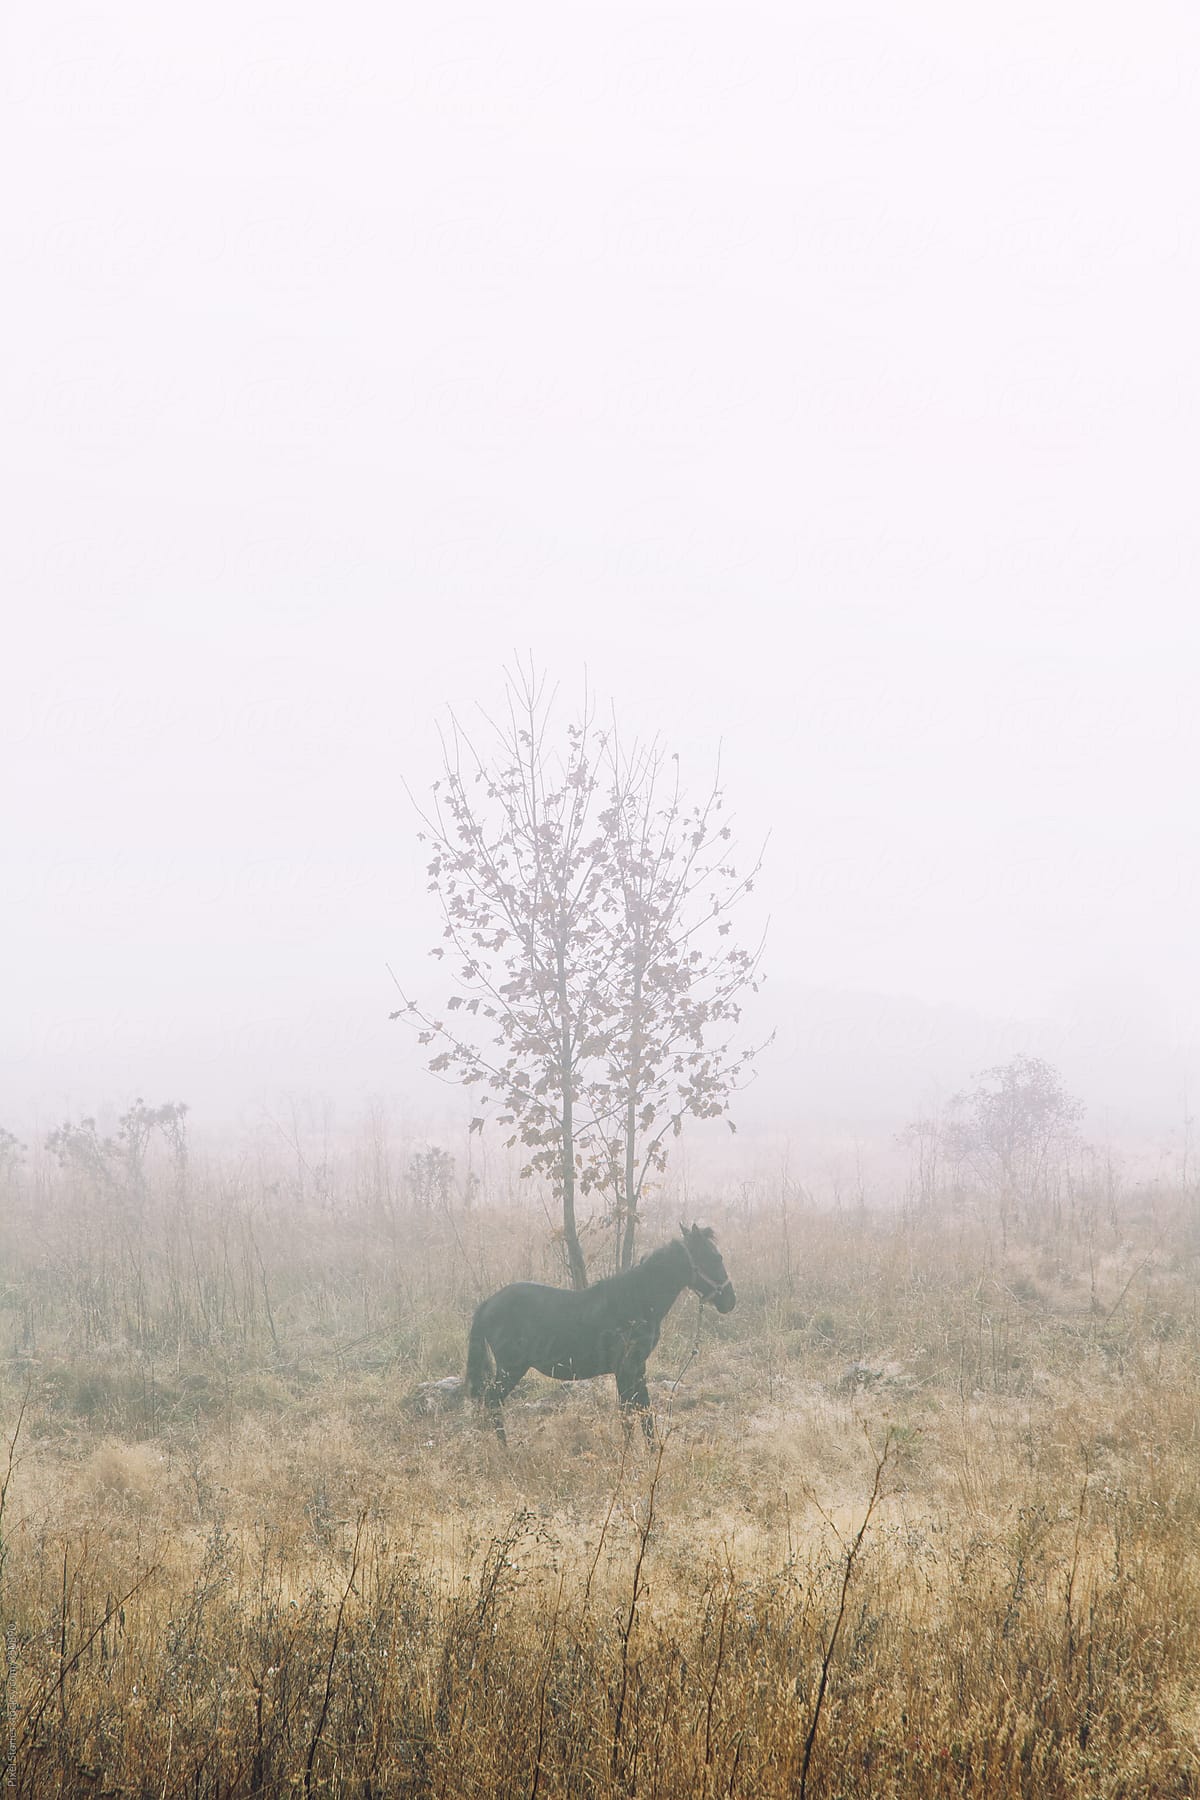 Horse in foggy field